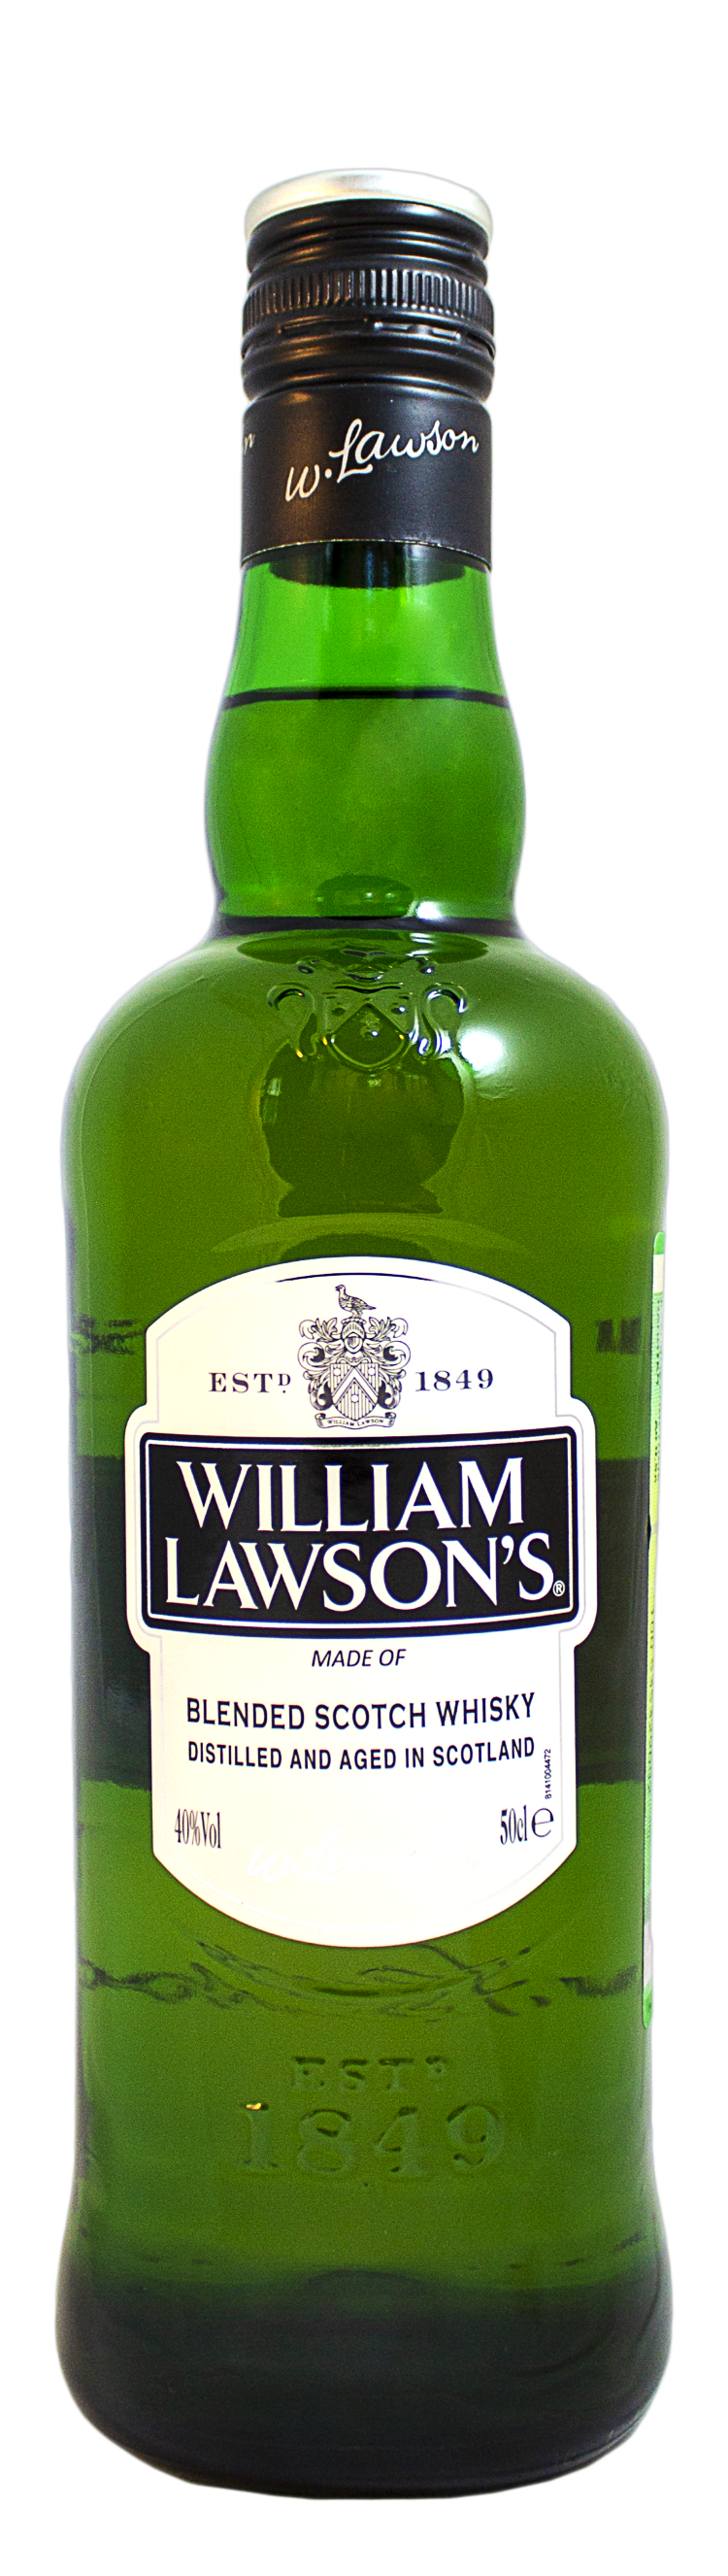 William lawson 0.5. William Lawson’s Вильям Лоусонс. Уильям Лоусон виски. Вильям Лоусонс 0.5. Виски William Lawson's 0.5.